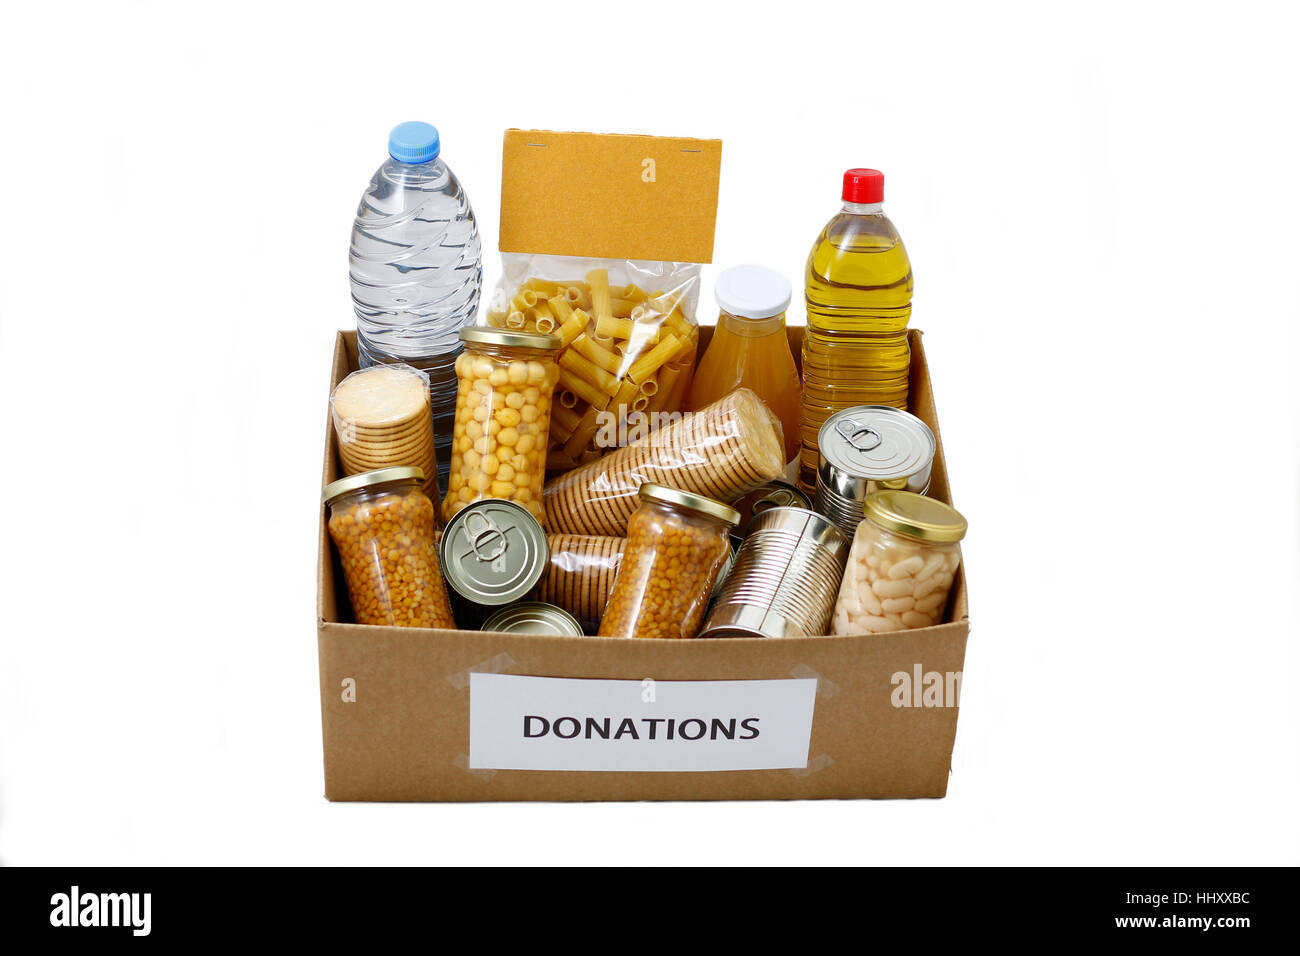 La nourriture dans une boîte de donation pour le besoin et la pauvreté la charité, isolé dans un fond blanc Banque D'Images